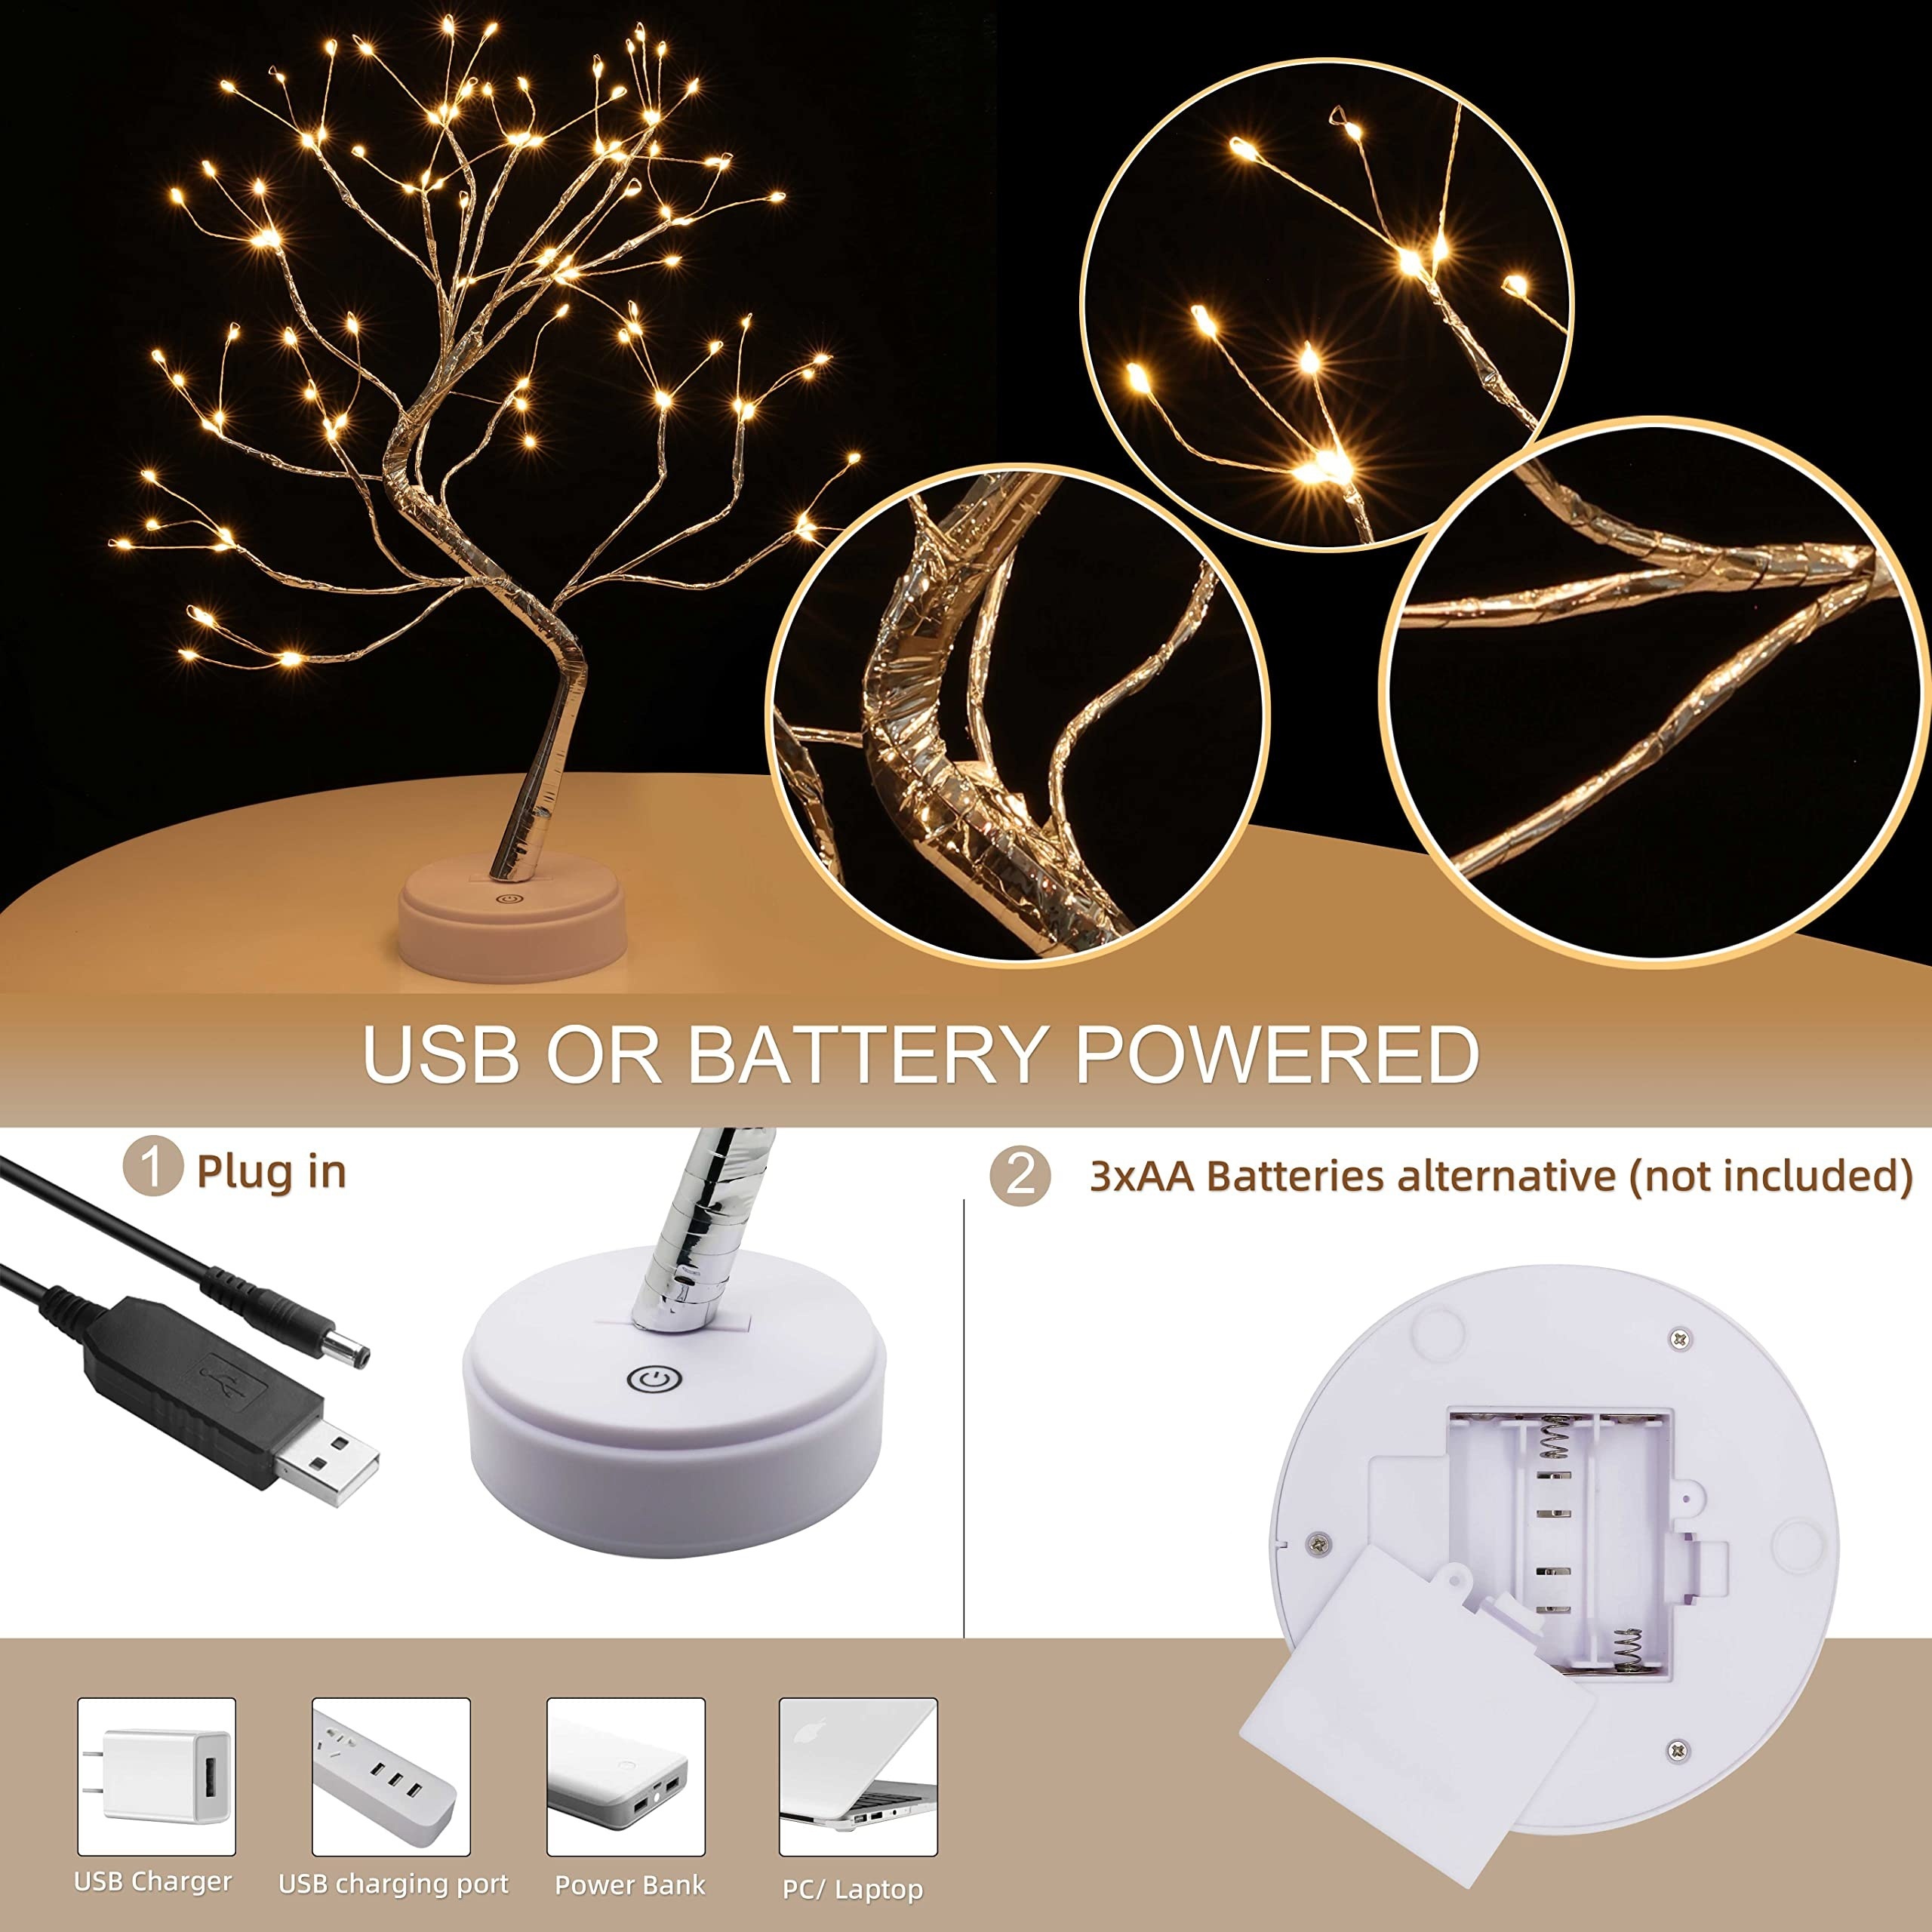 LED Baum Lichter Warmweiß USB Bonsai Baum Licht Verstellbare Äste  Batteriebetrieben Dekobaum Belichtet Kleine Baumbeleuchtung Innen Deko (108  Lampenperlen)